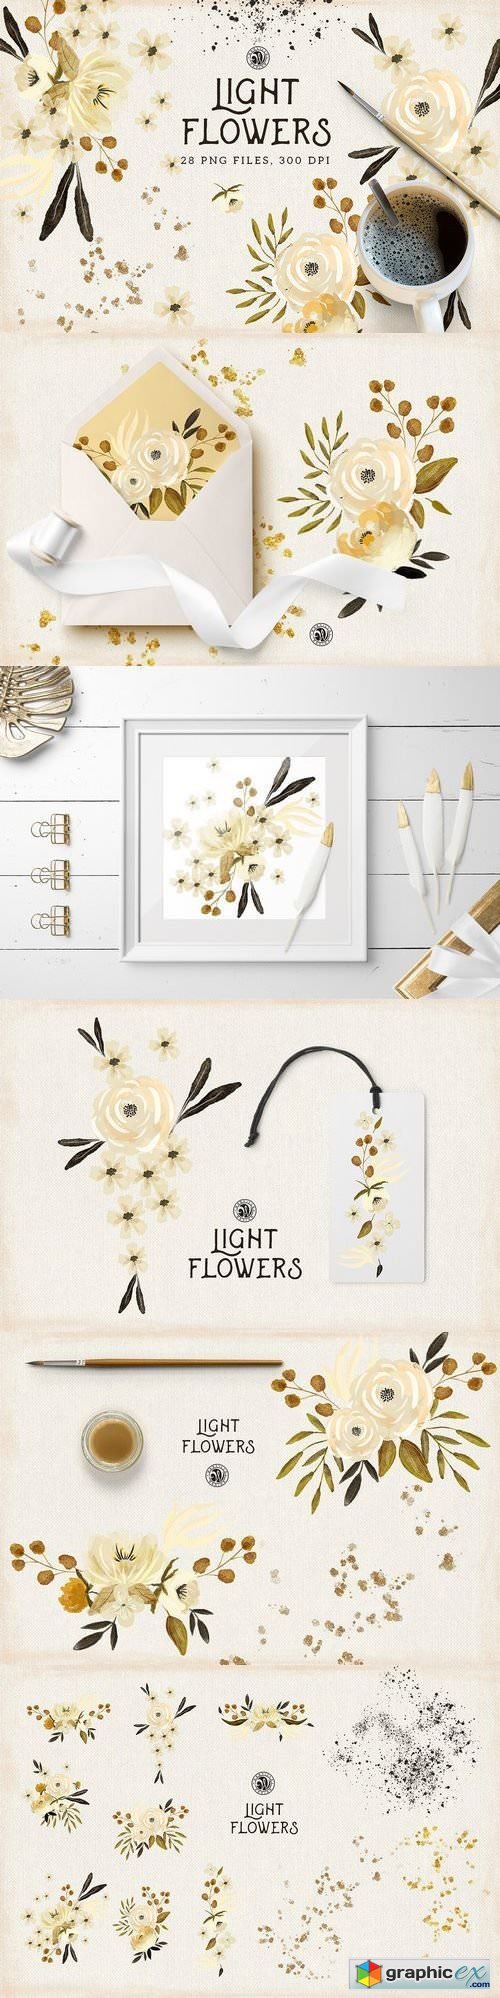 Light Flowers